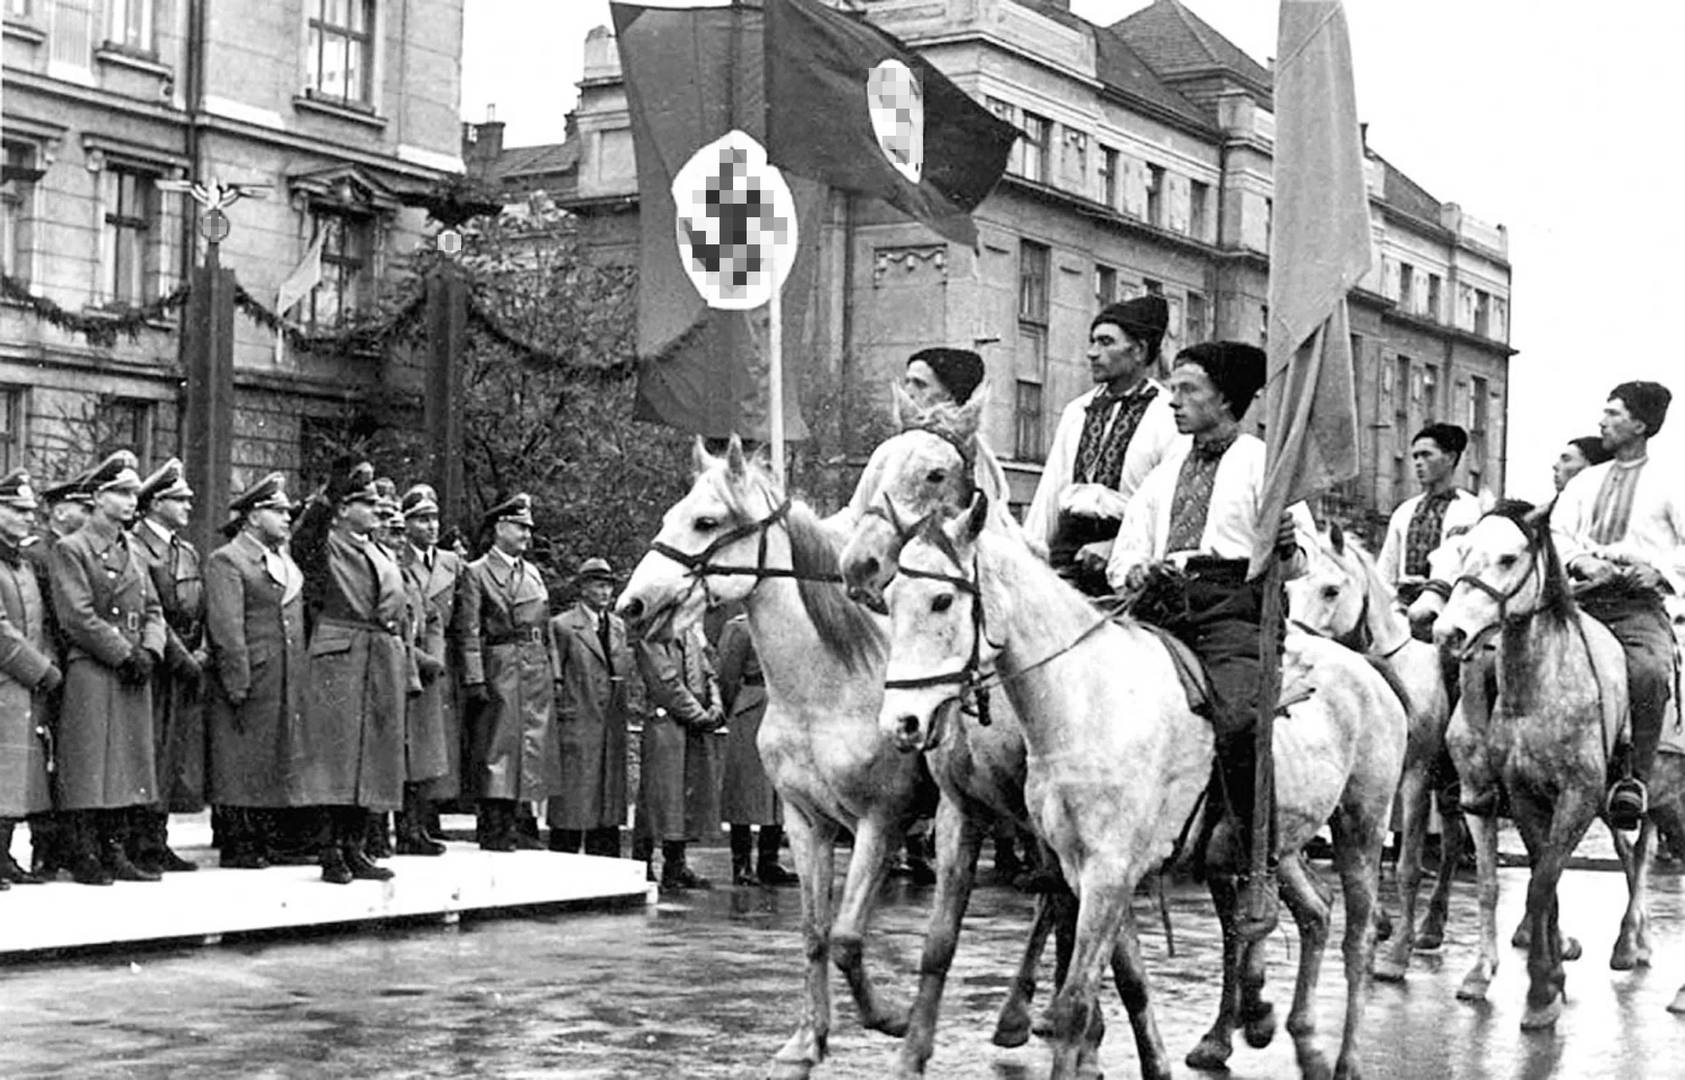 Парад в Станиславе (Ивано-Франковск) в честь визита генерал-губернатора Польши рейхсляйтера Ганса Франка. Октябрь 1941